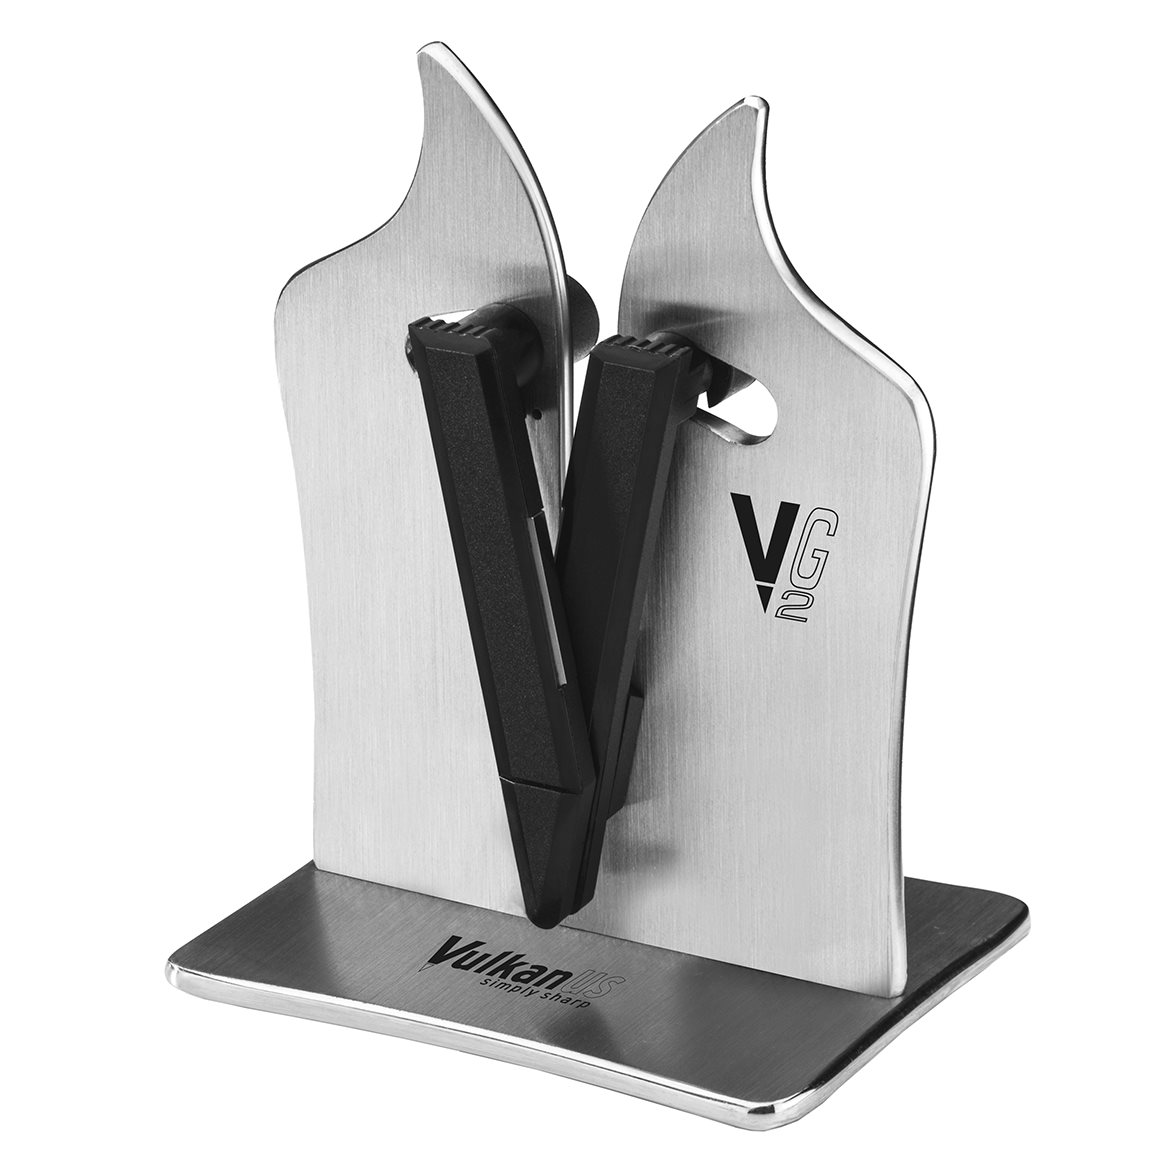 Vulkanus VG2 Professional Knife Sharpener